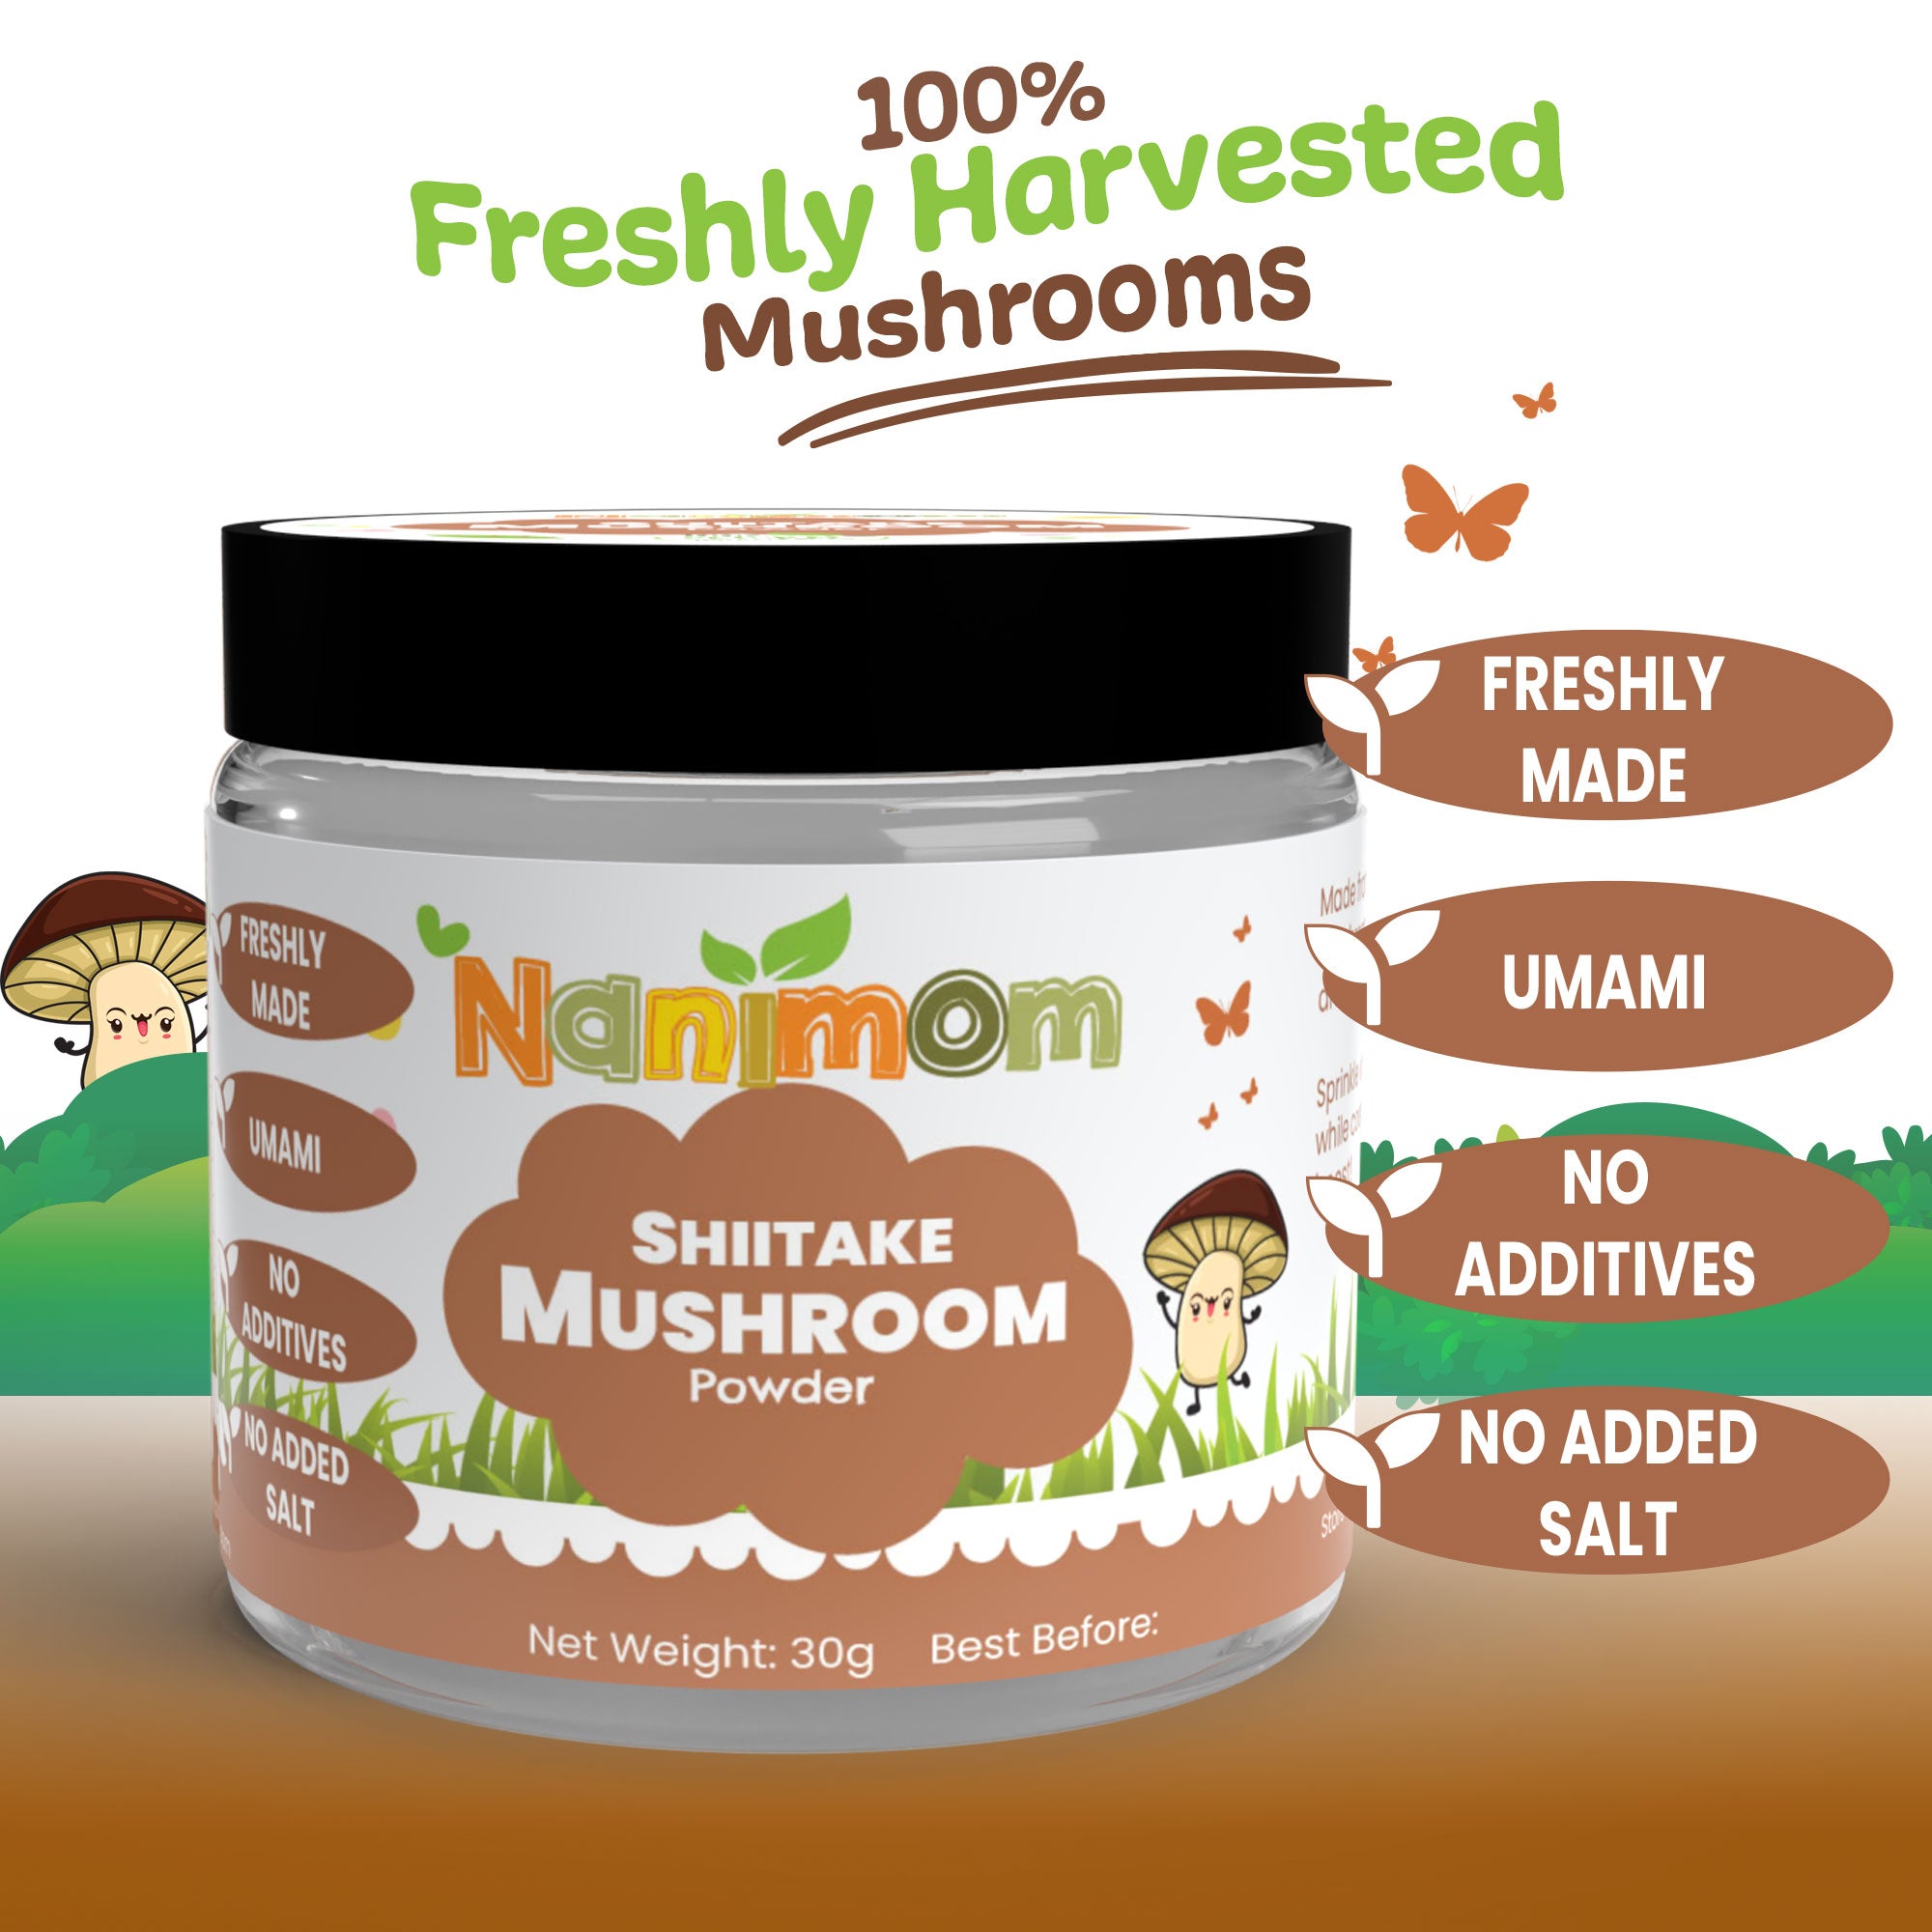 Nanimom Fresh Shiitake Mushroom Powder